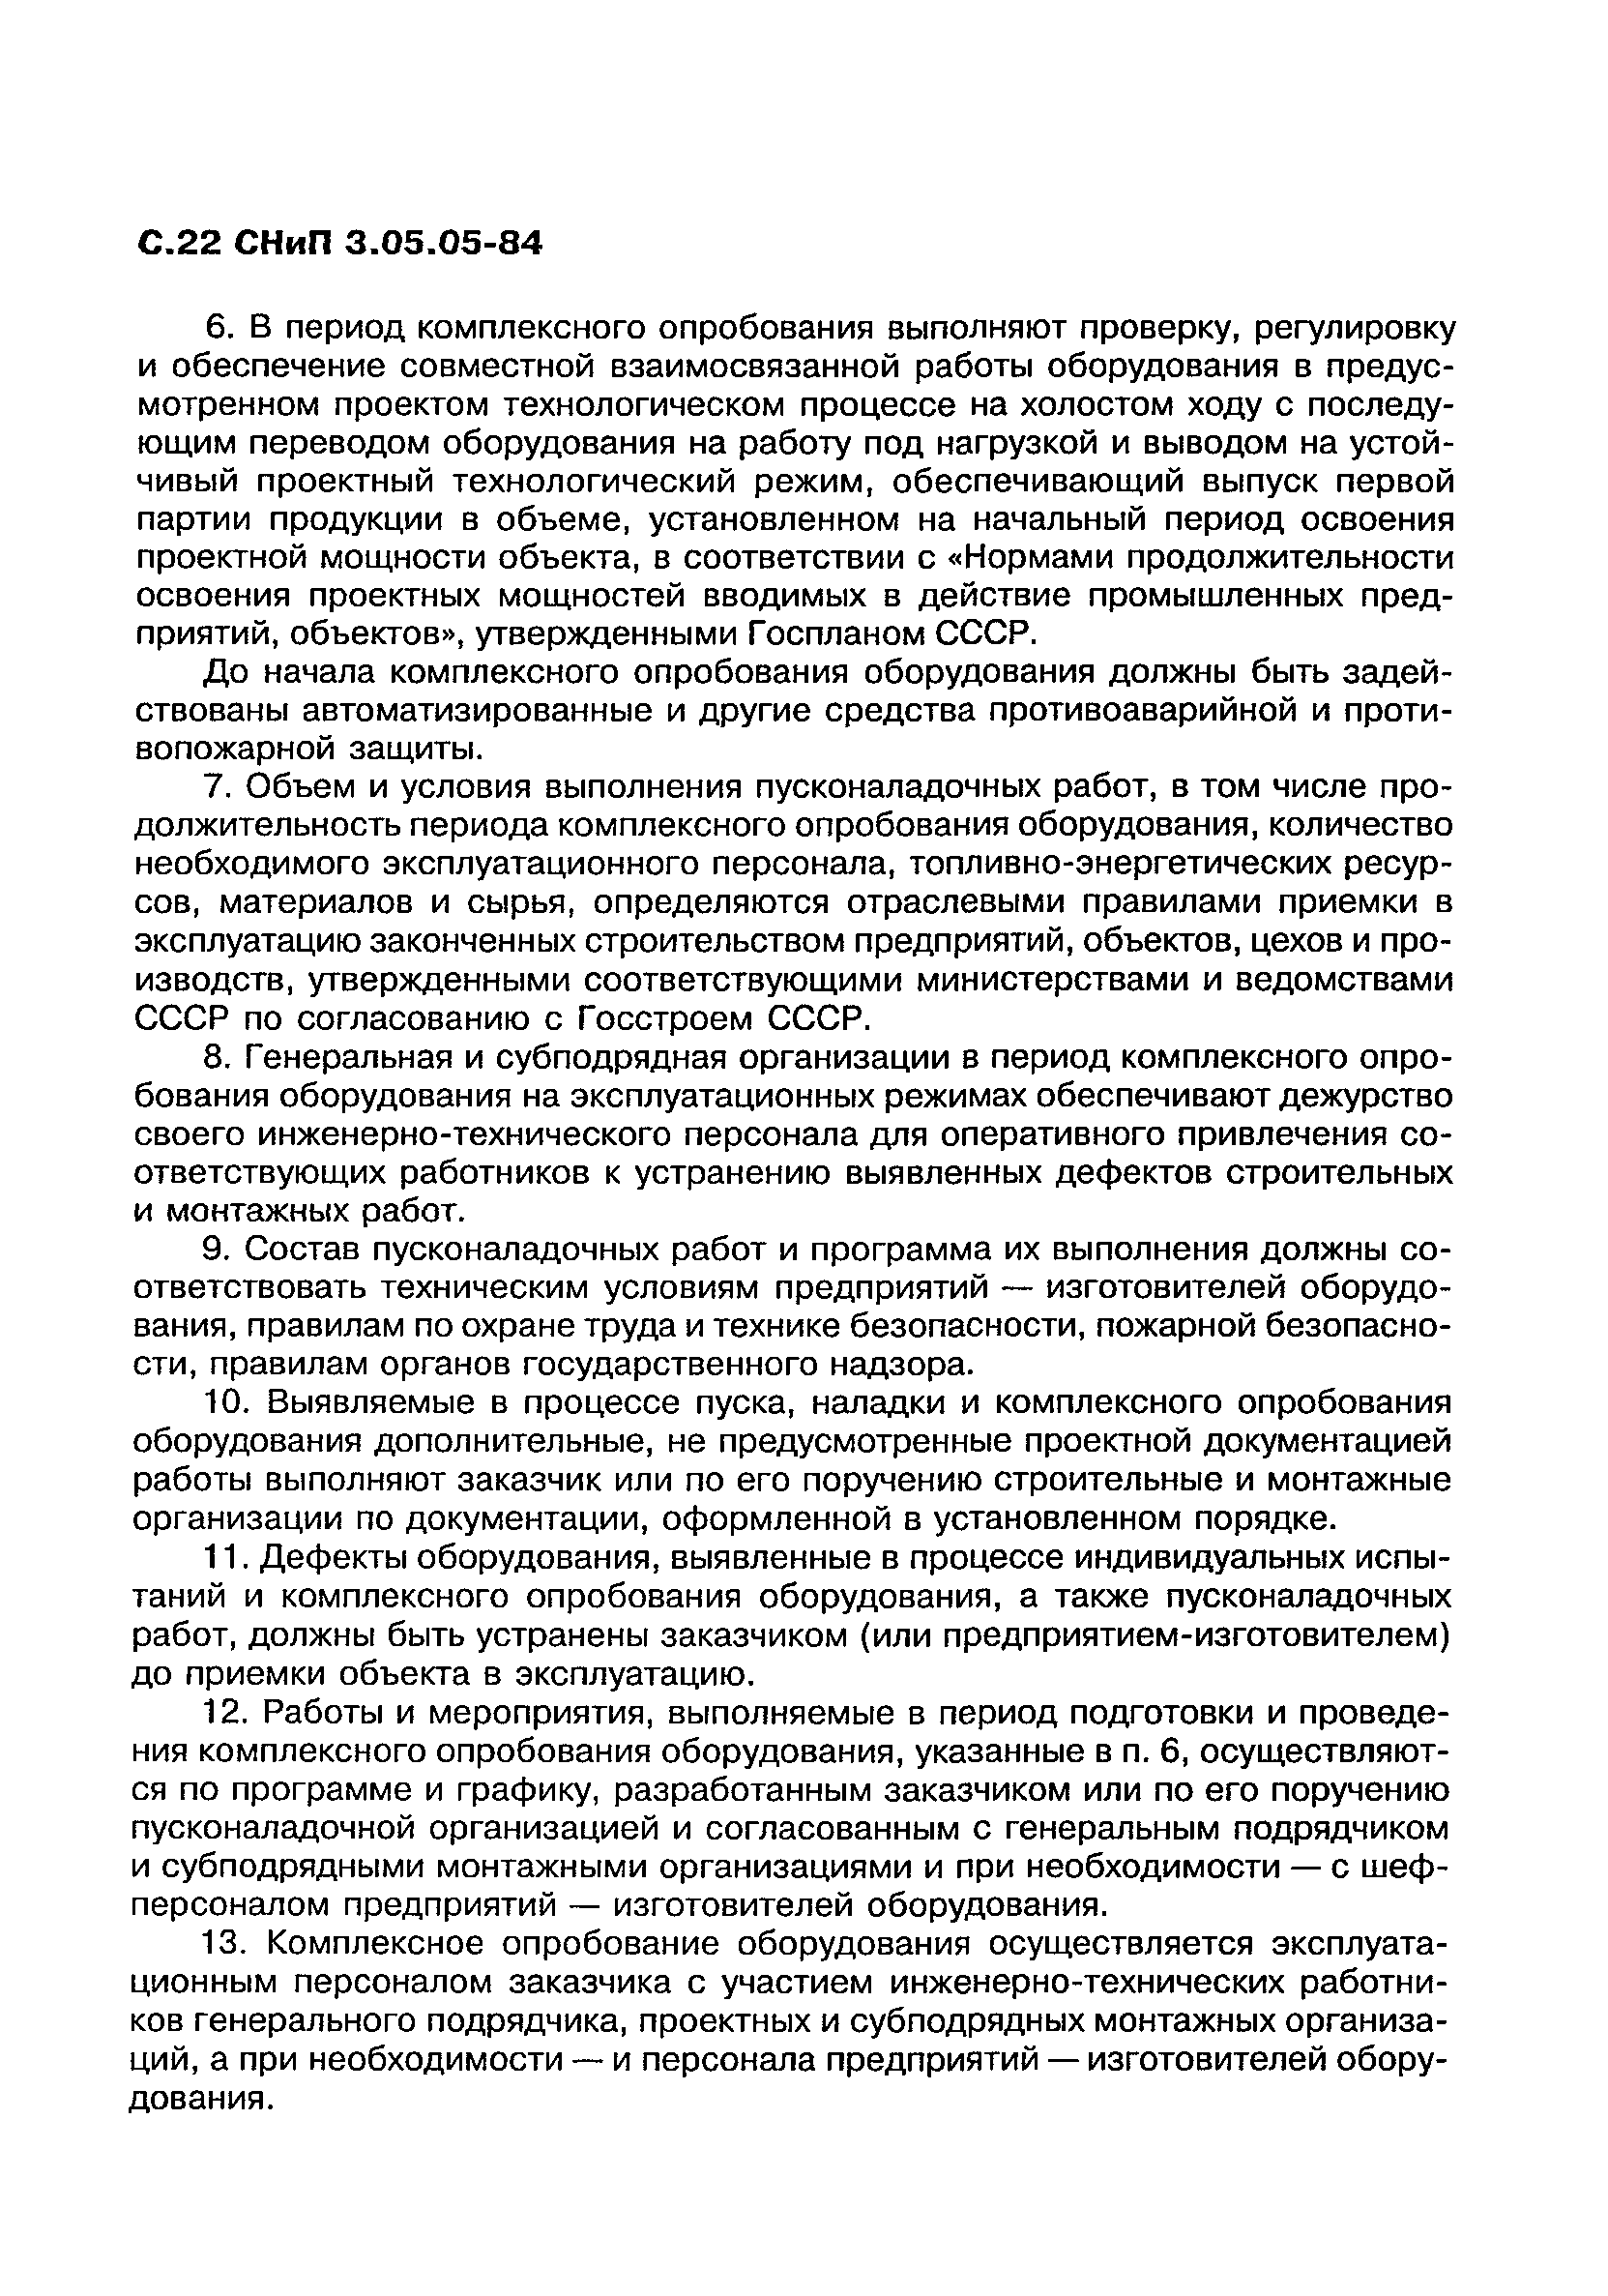 СНиП 3.05.05-84